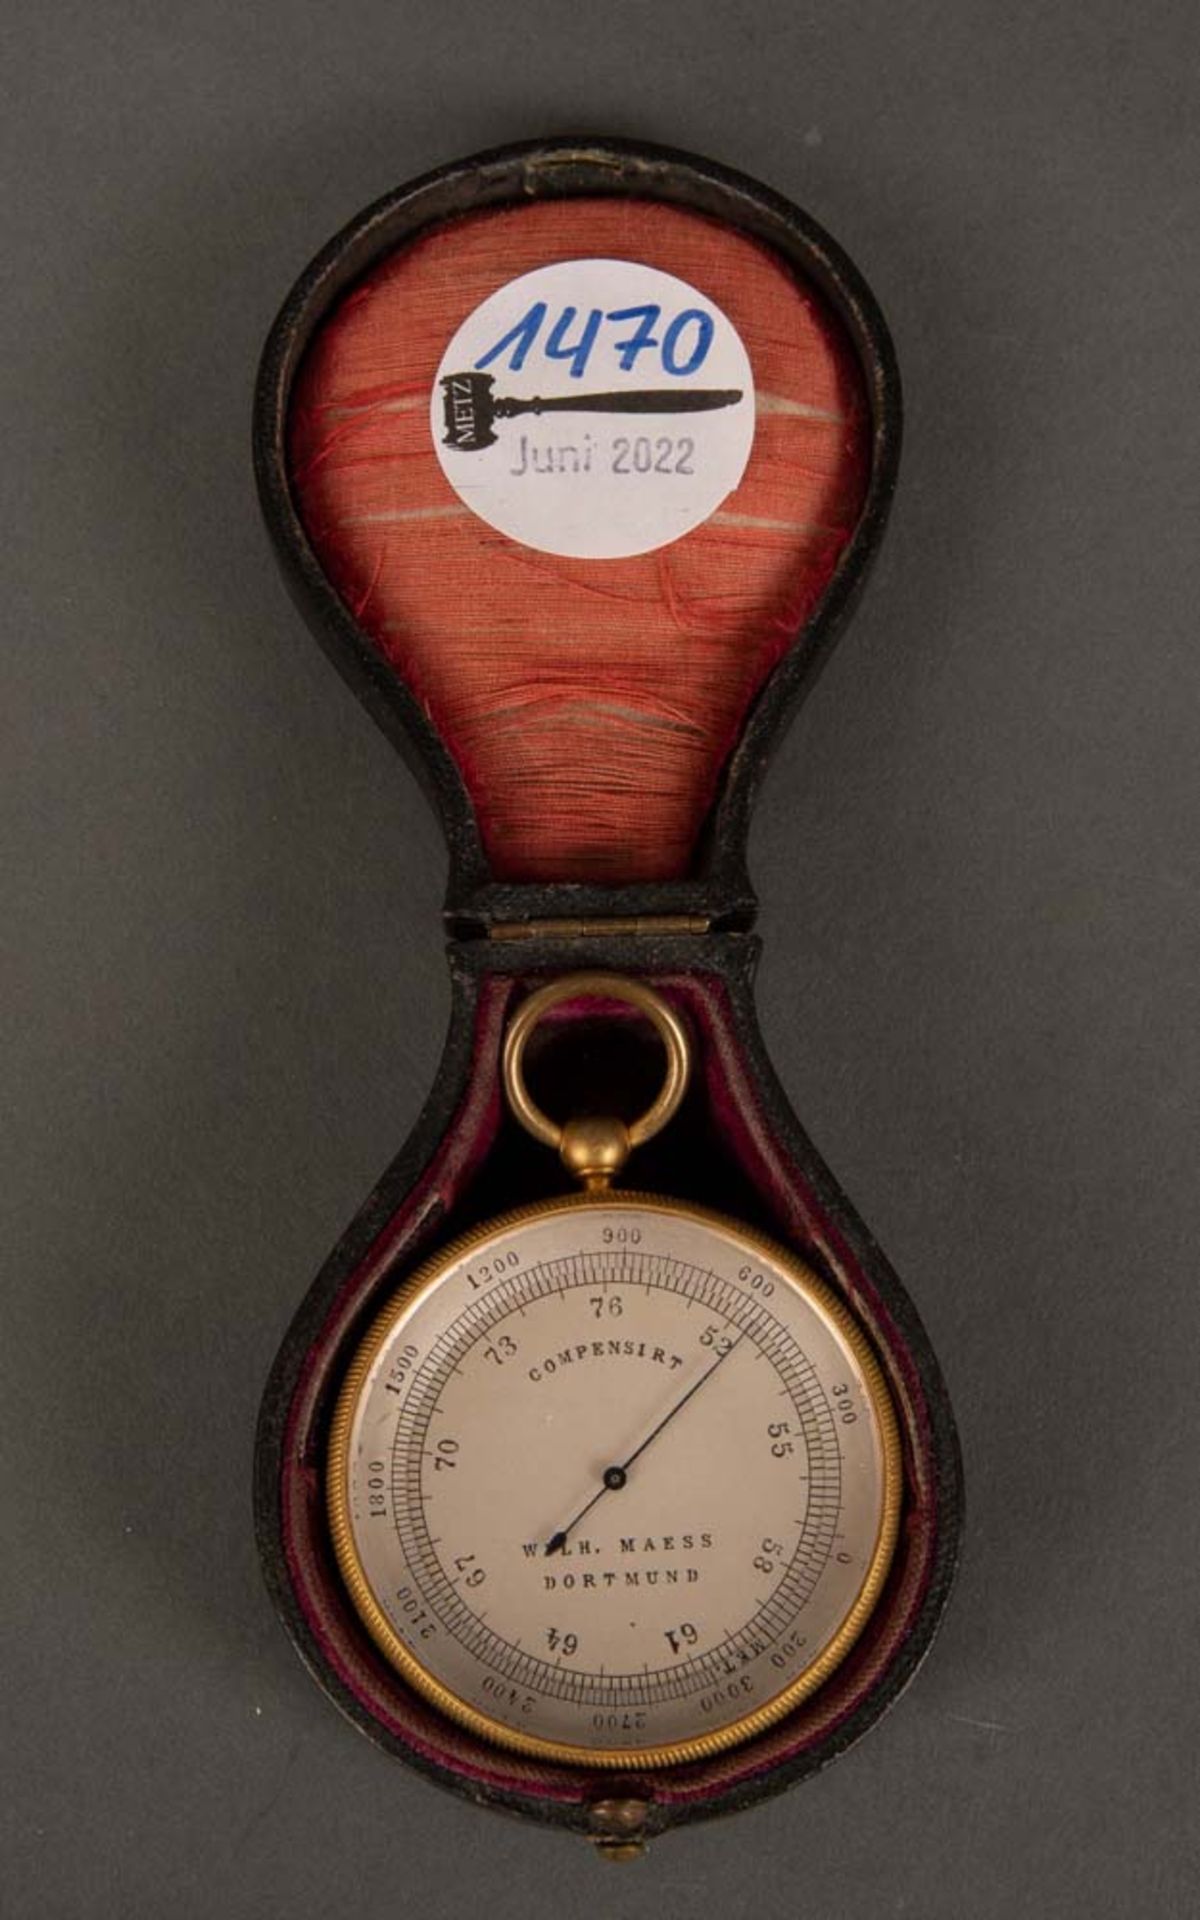 Taschen-Barometer. Dortmund, Wilh. Maess 19. Jh. Bronzekorpus, mit drehbarer Lünette, innenliegend